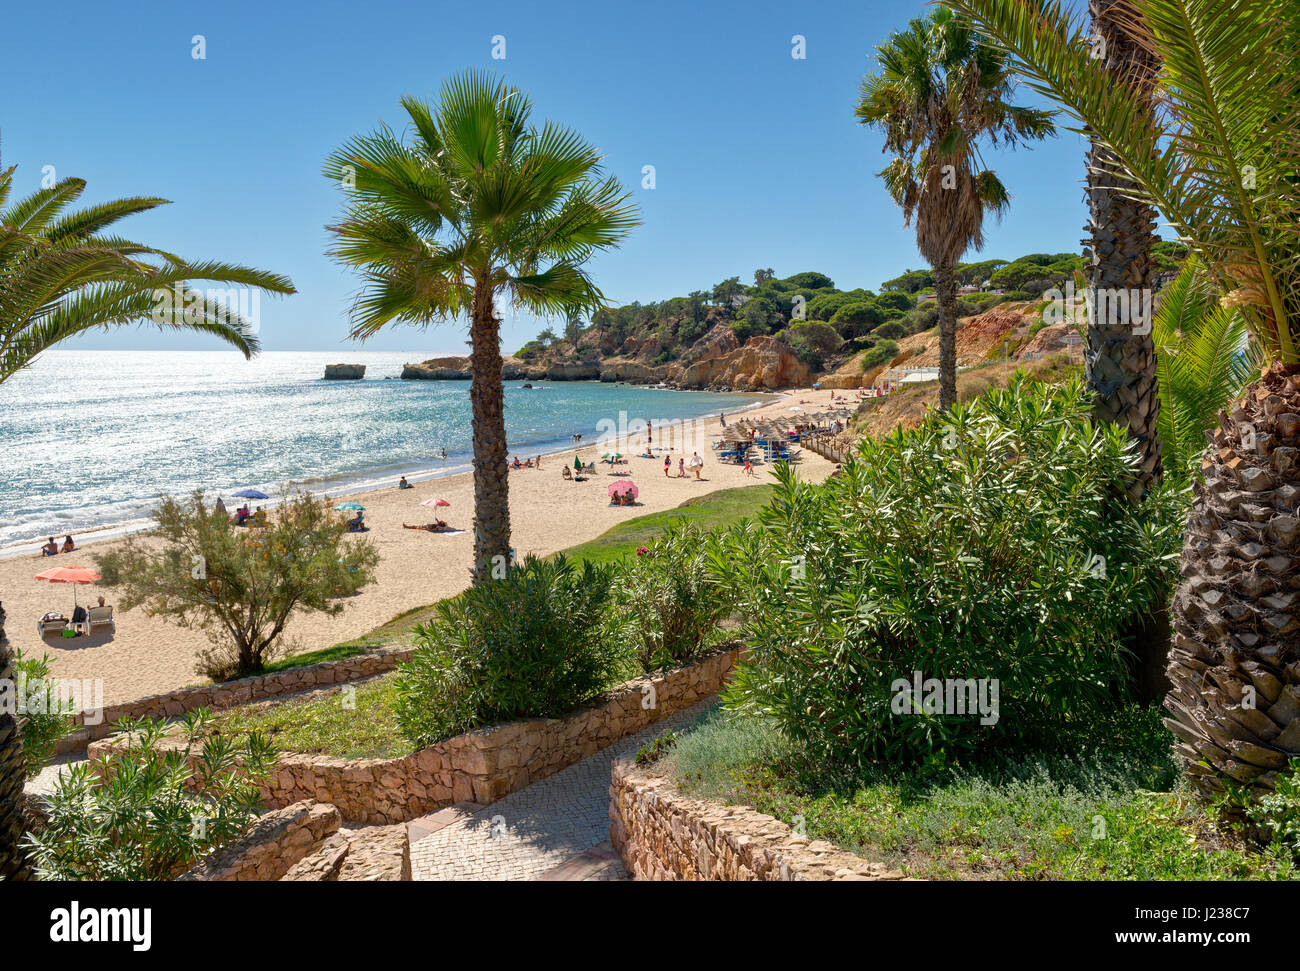 Portugal, Algarve, Albufeira, Praia de Santa Eulalia Stockfoto